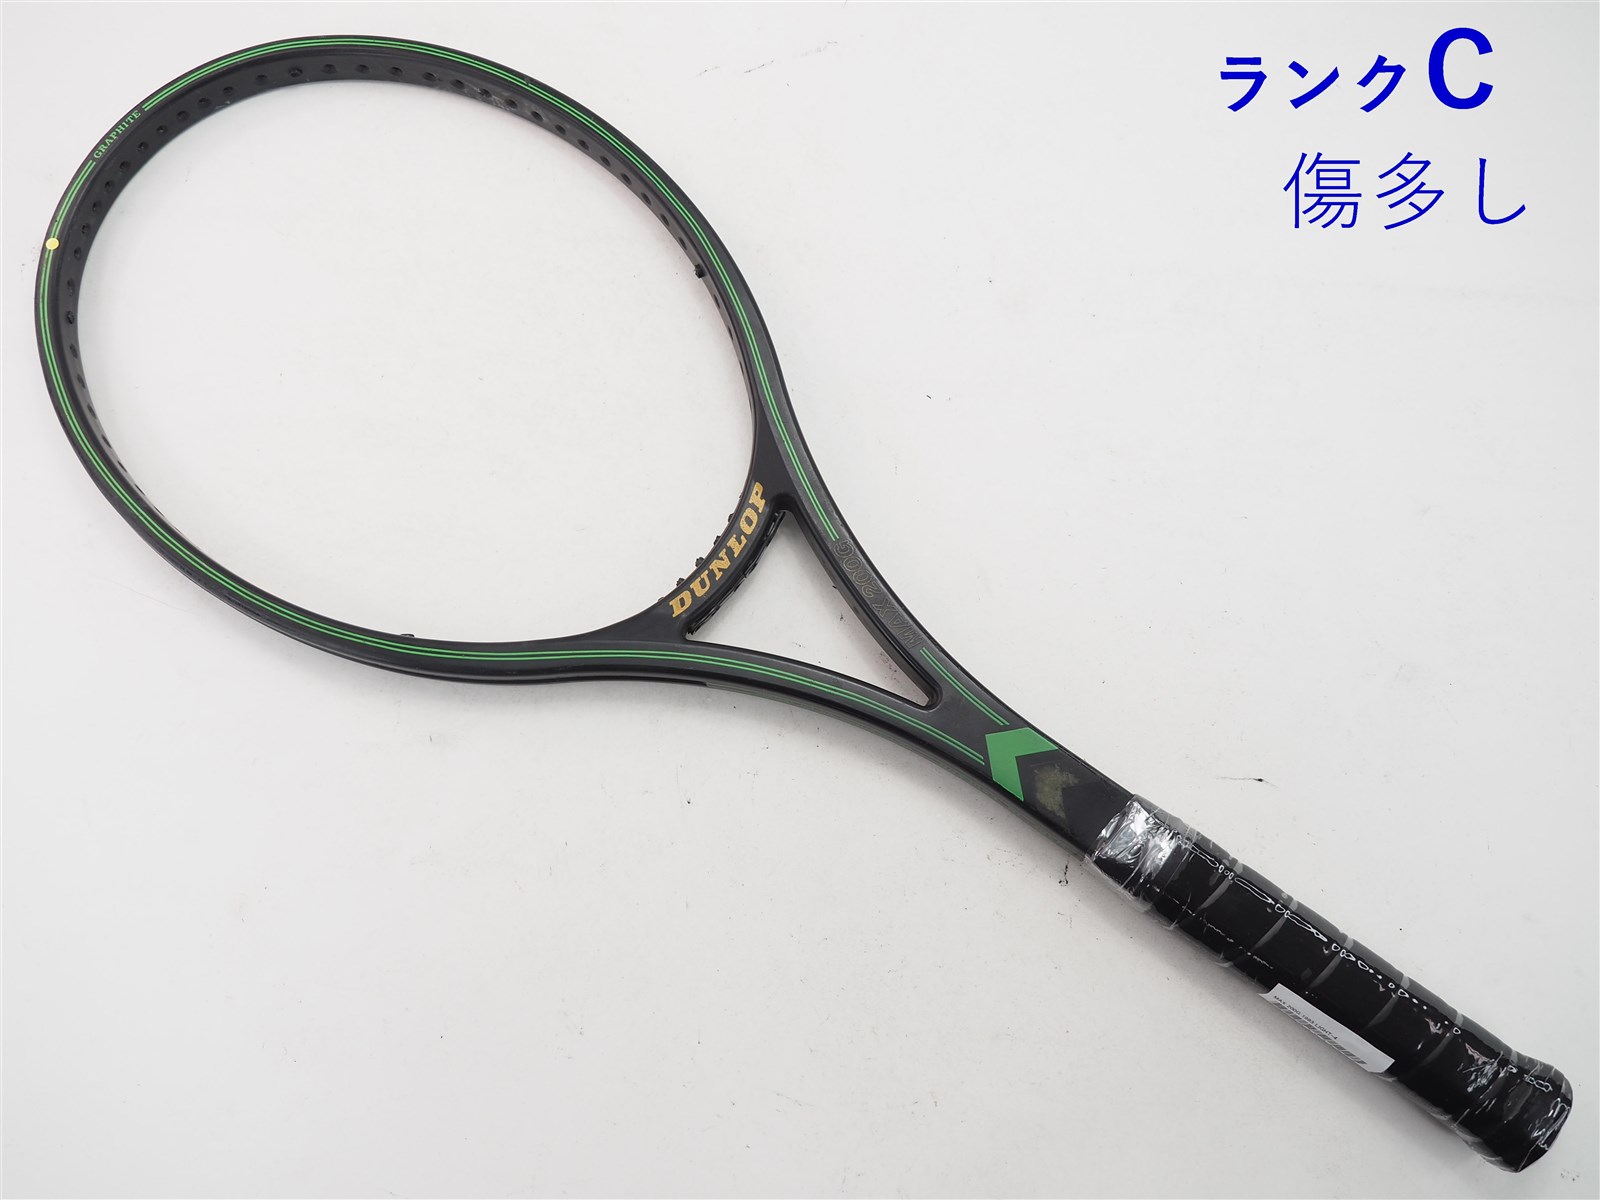 テニスラケット ダンロップ マックス 200G 1983年モデル【一部